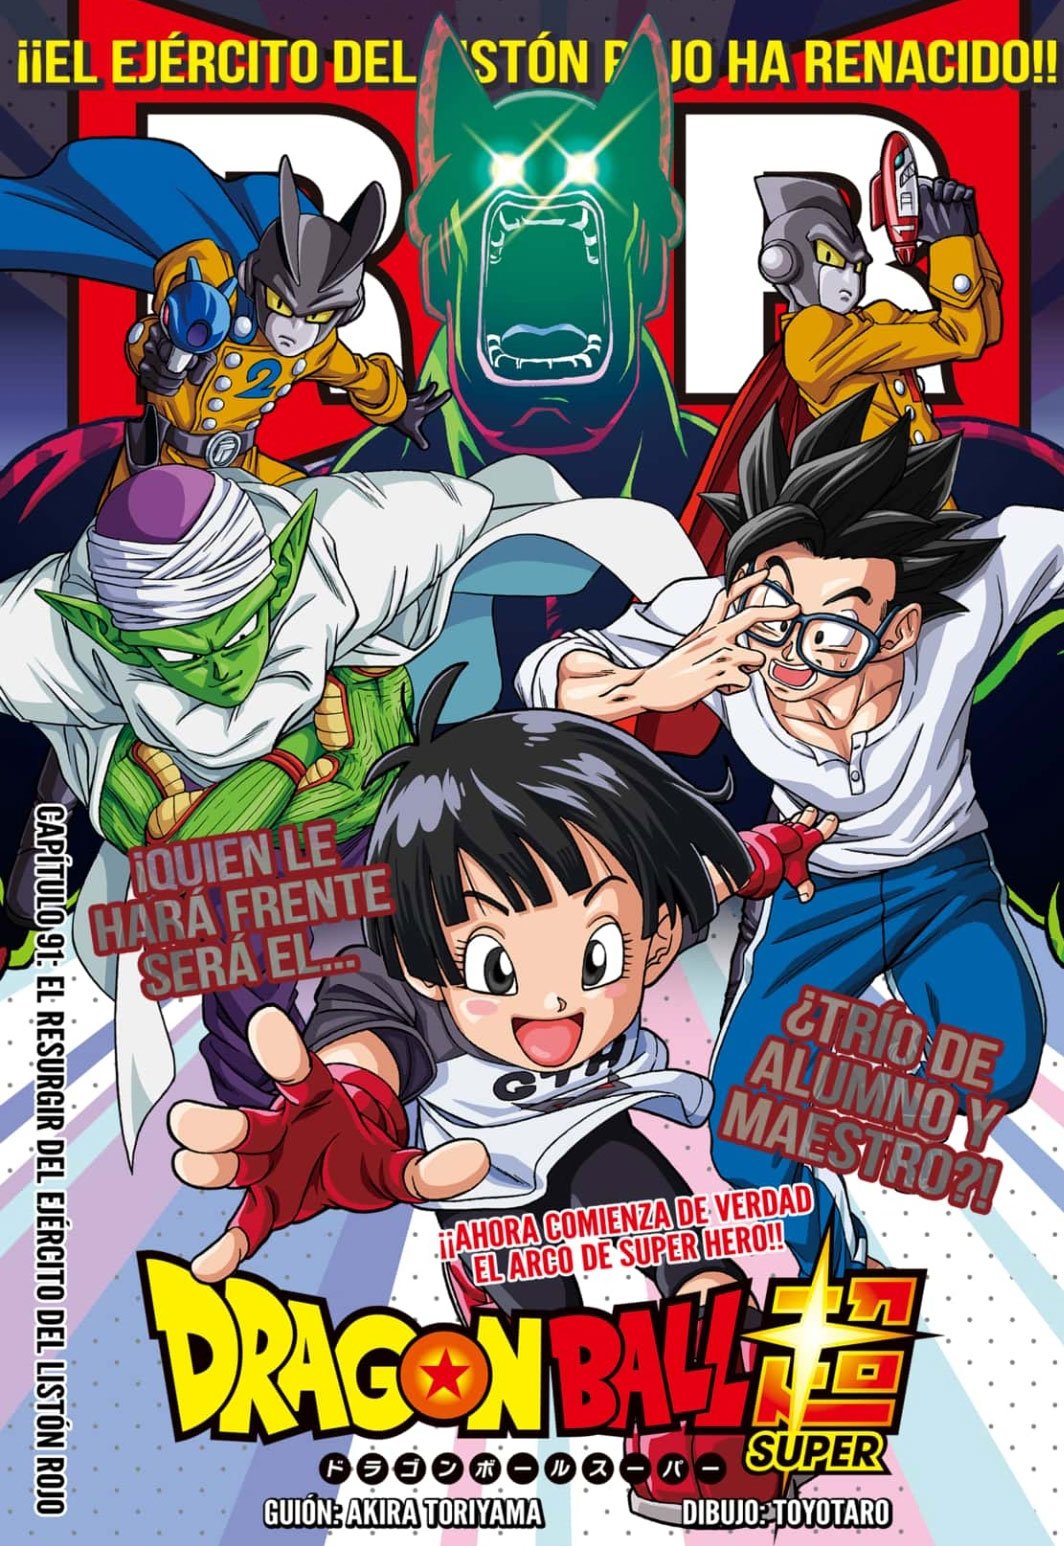 Dragon Ball Super: Ya disponible gratis y en español el capítulo